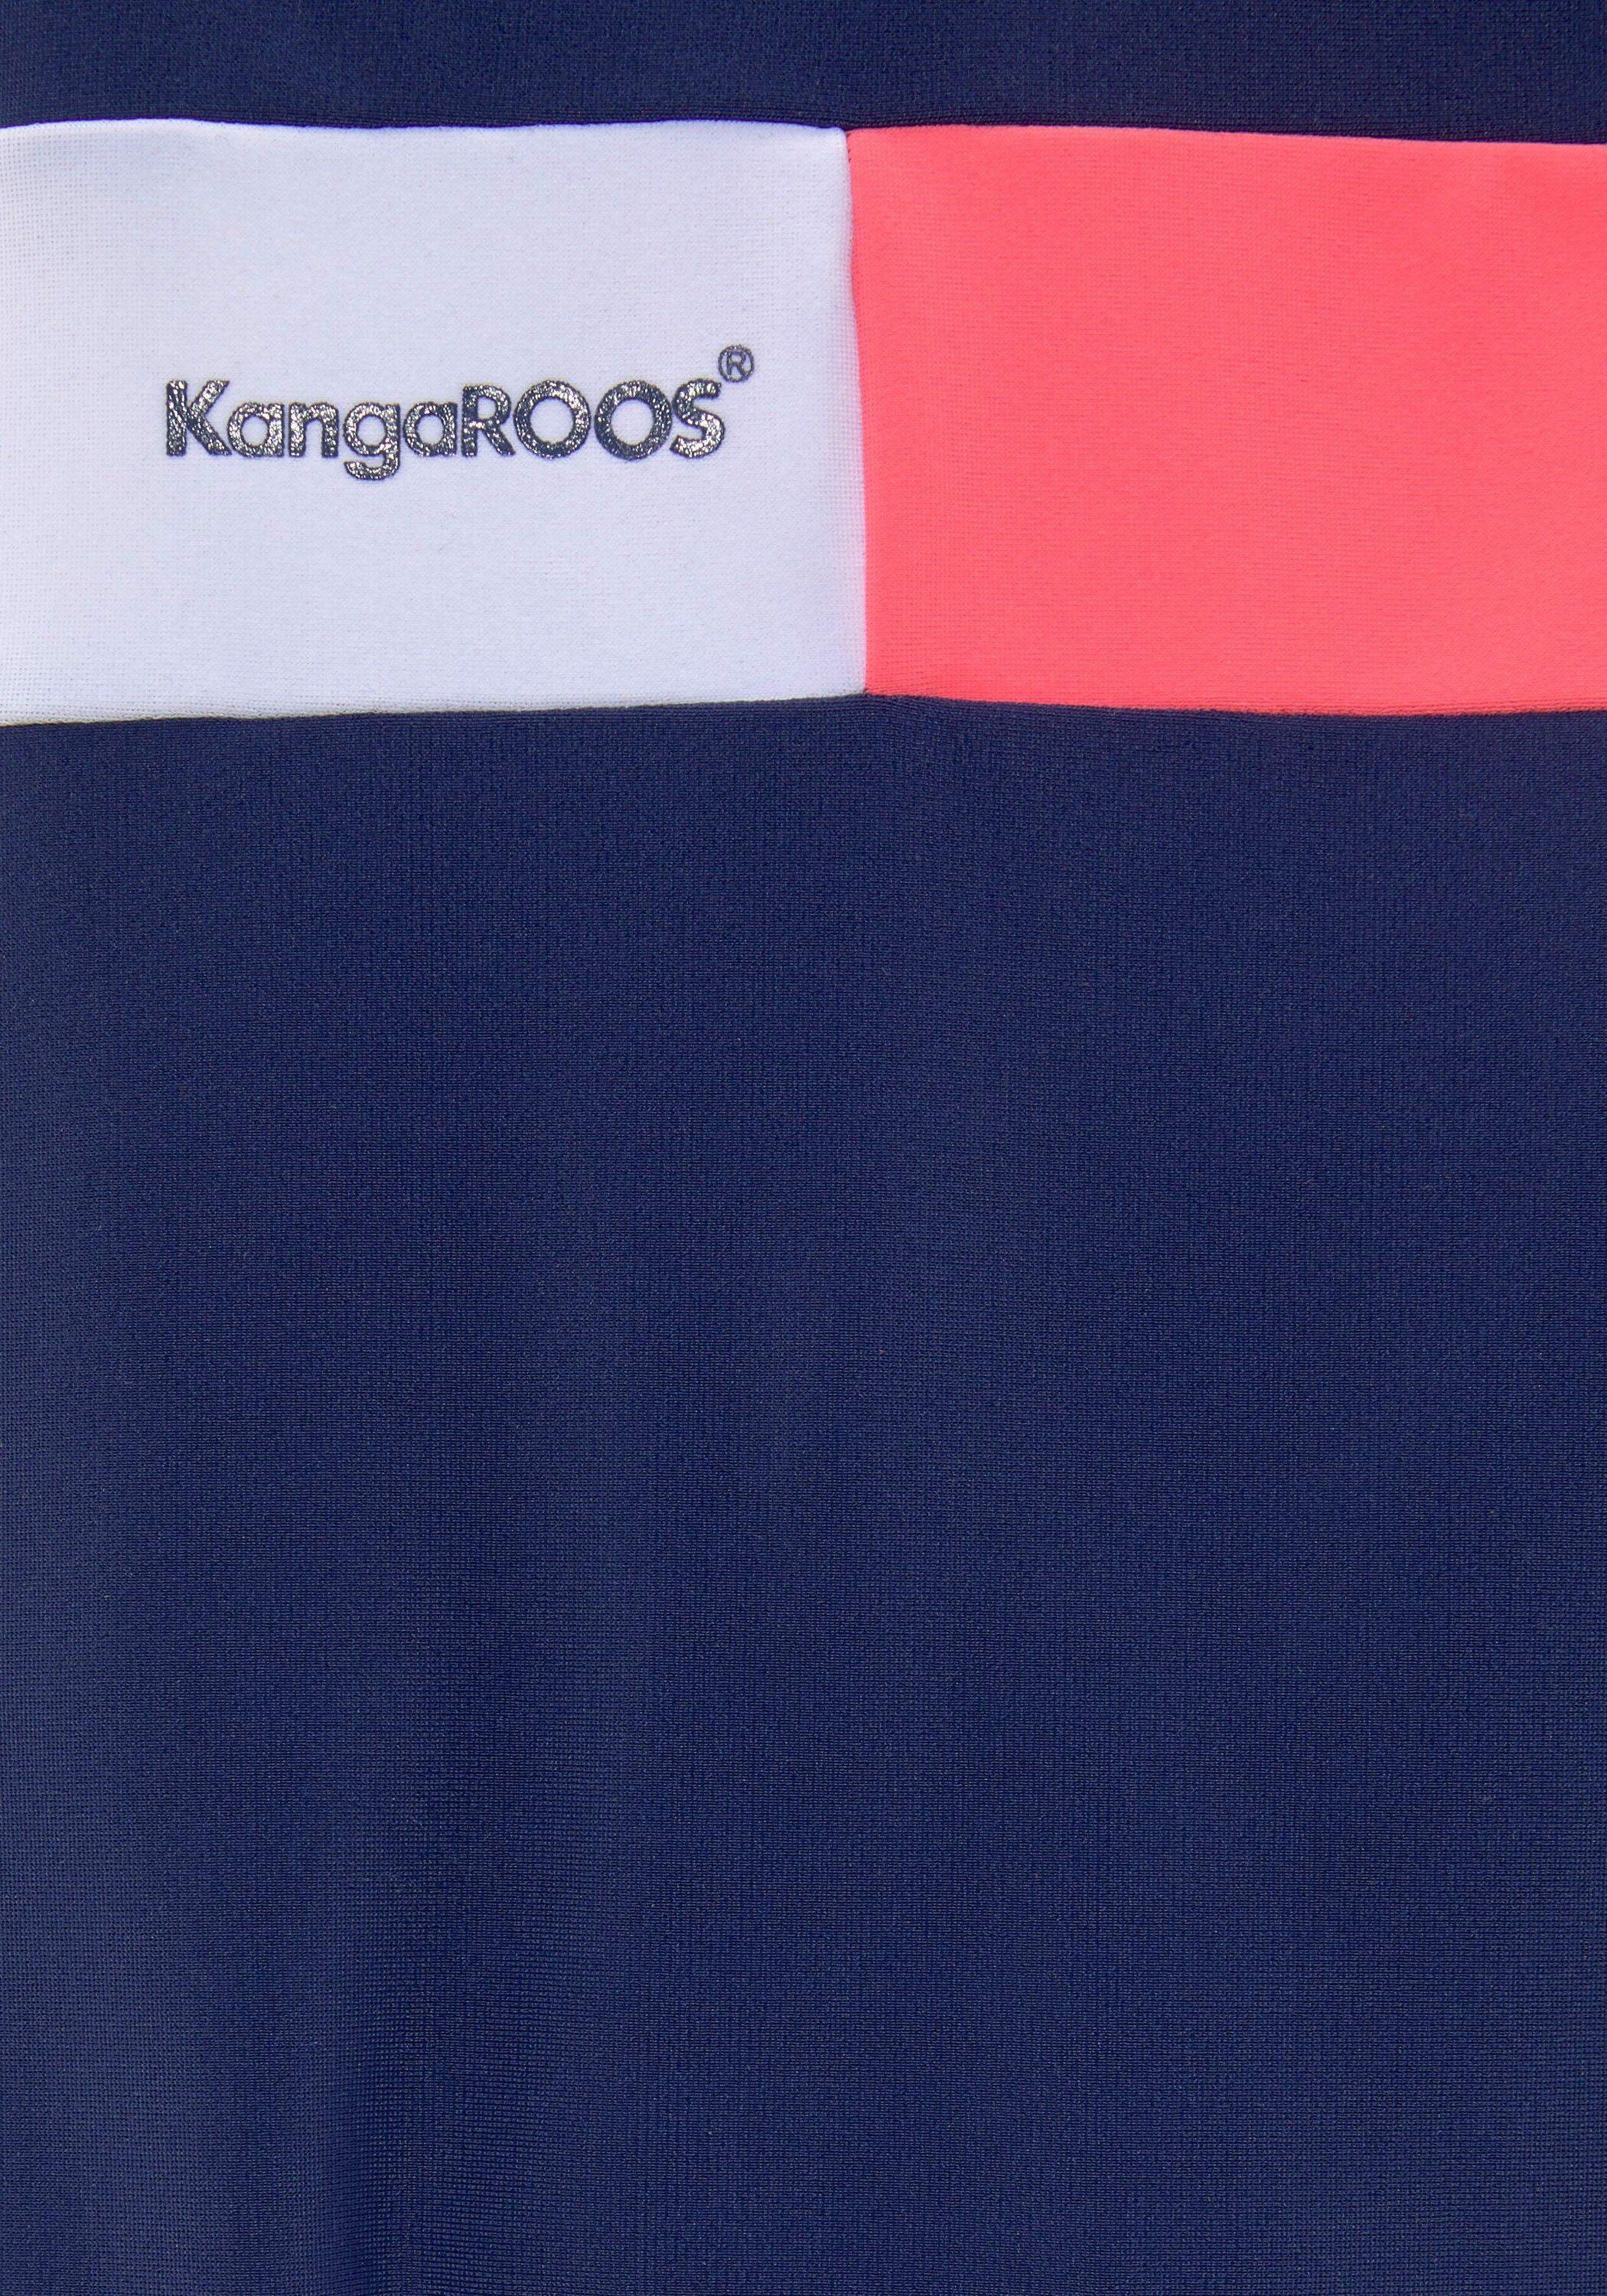 KangaROOS Badeanzug Damen marine-pink-weiß im Online Shop von SportScheck  kaufen